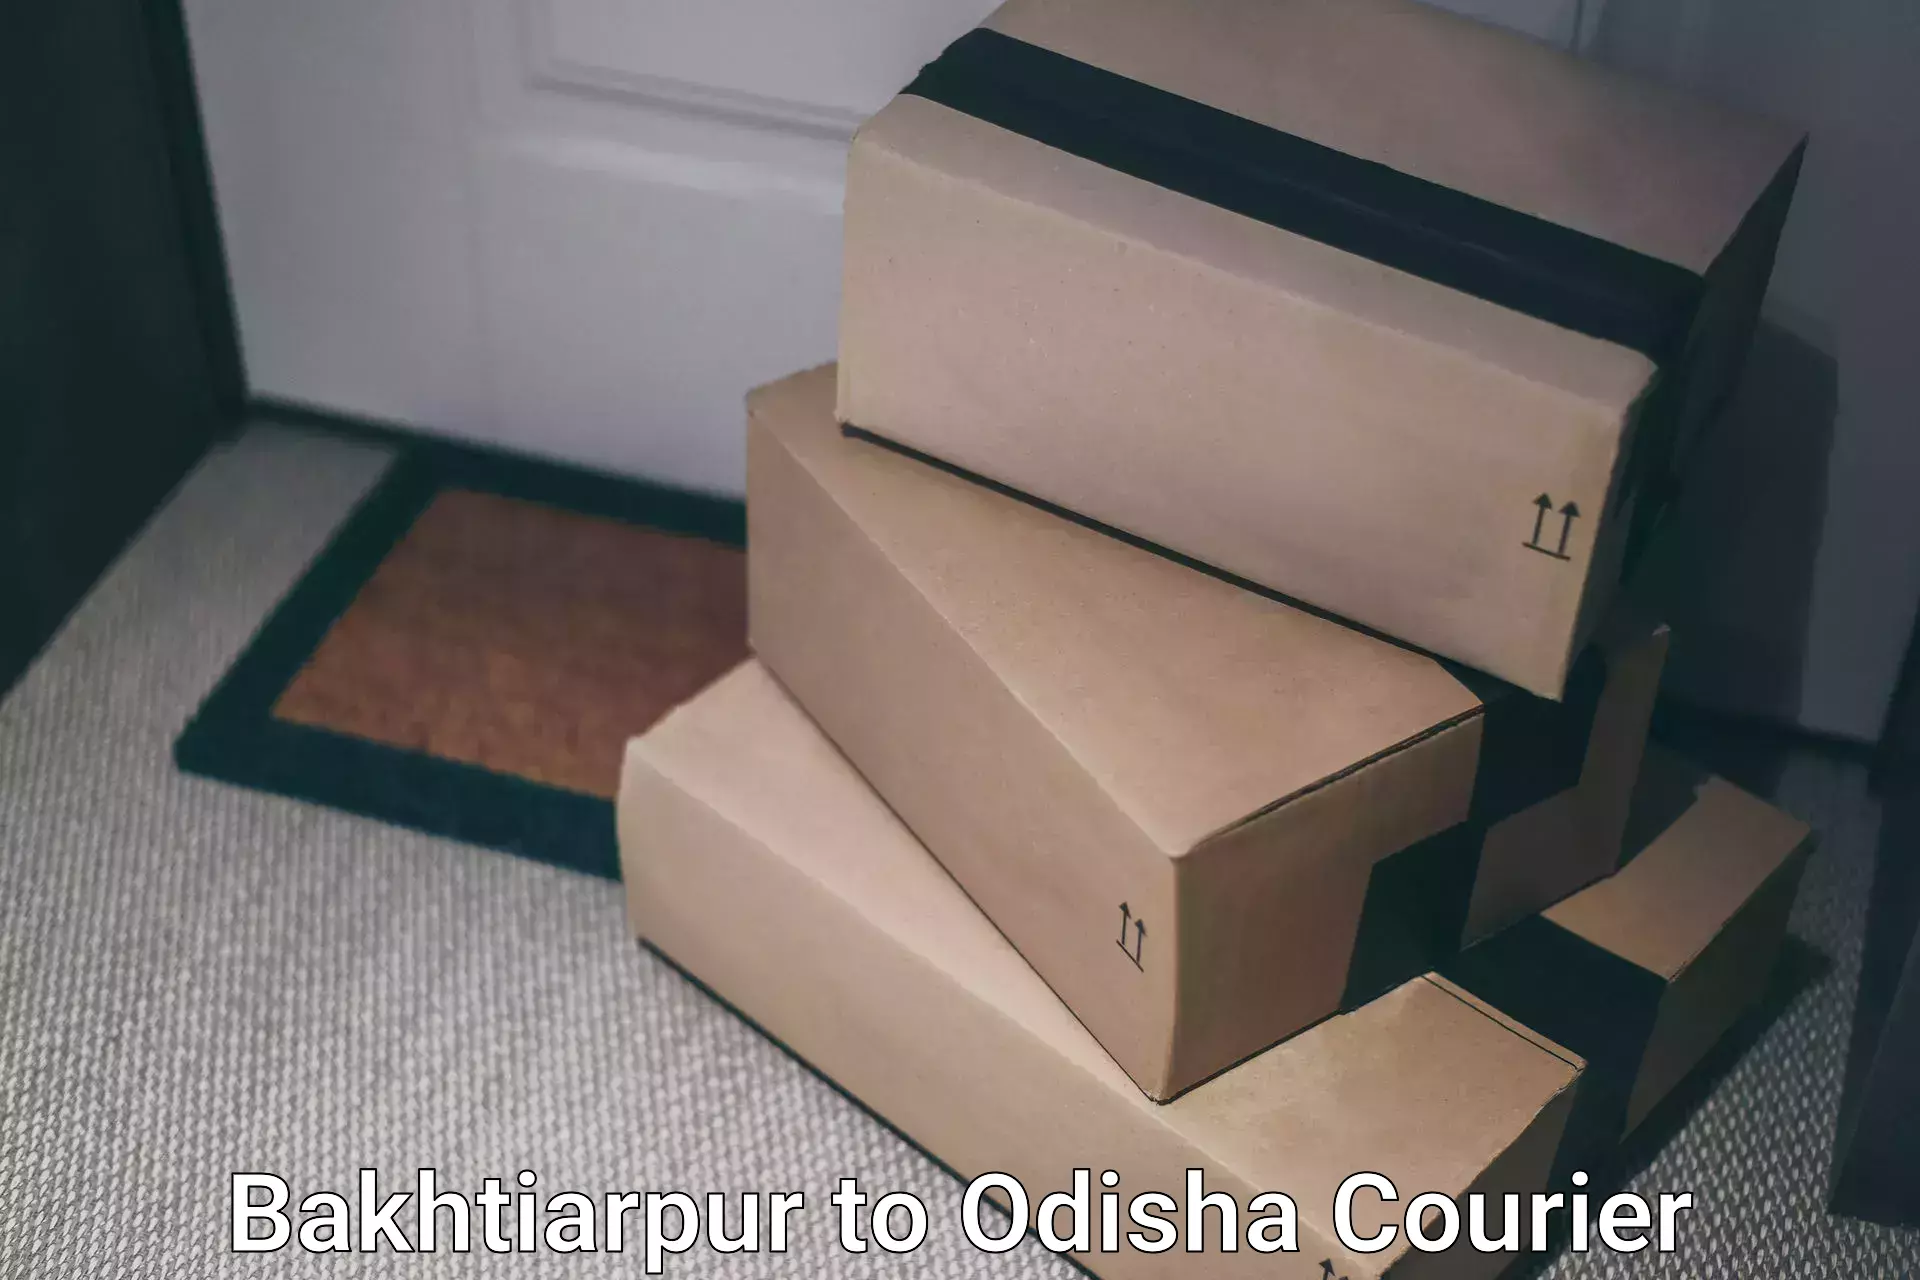 Customer-centric shipping in Bakhtiarpur to Odisha